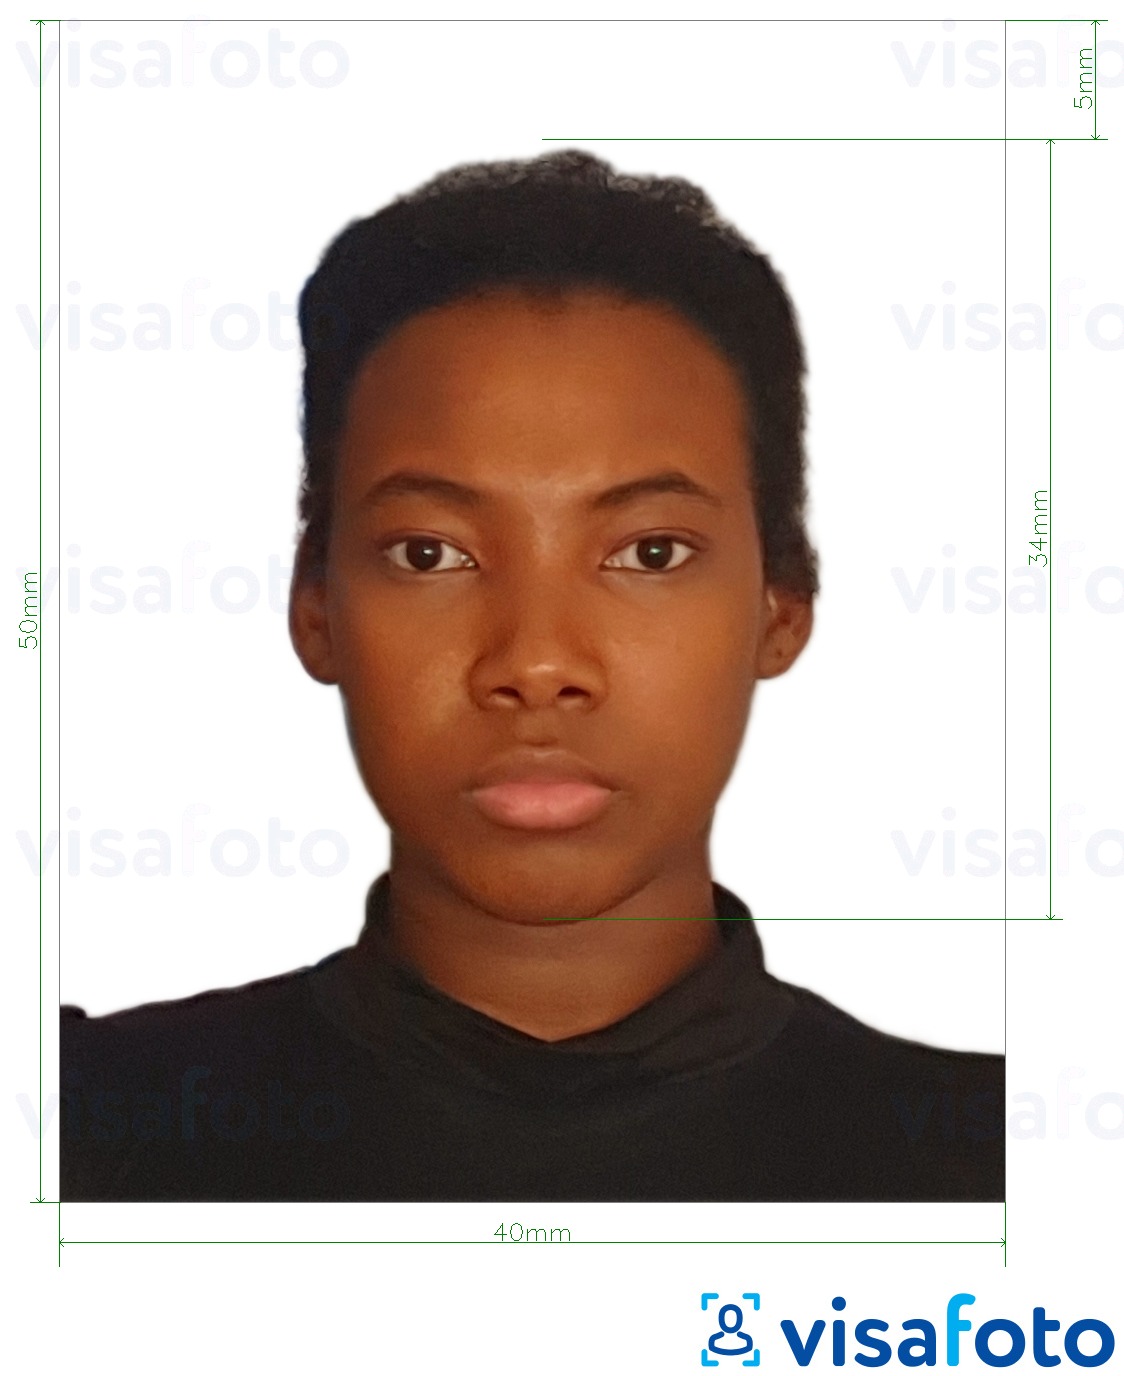 Contoh dari foto untuk Paspor Kamerun 4x5 cm (40x50 mm) dengan ukuran spesifikasi yang tepat